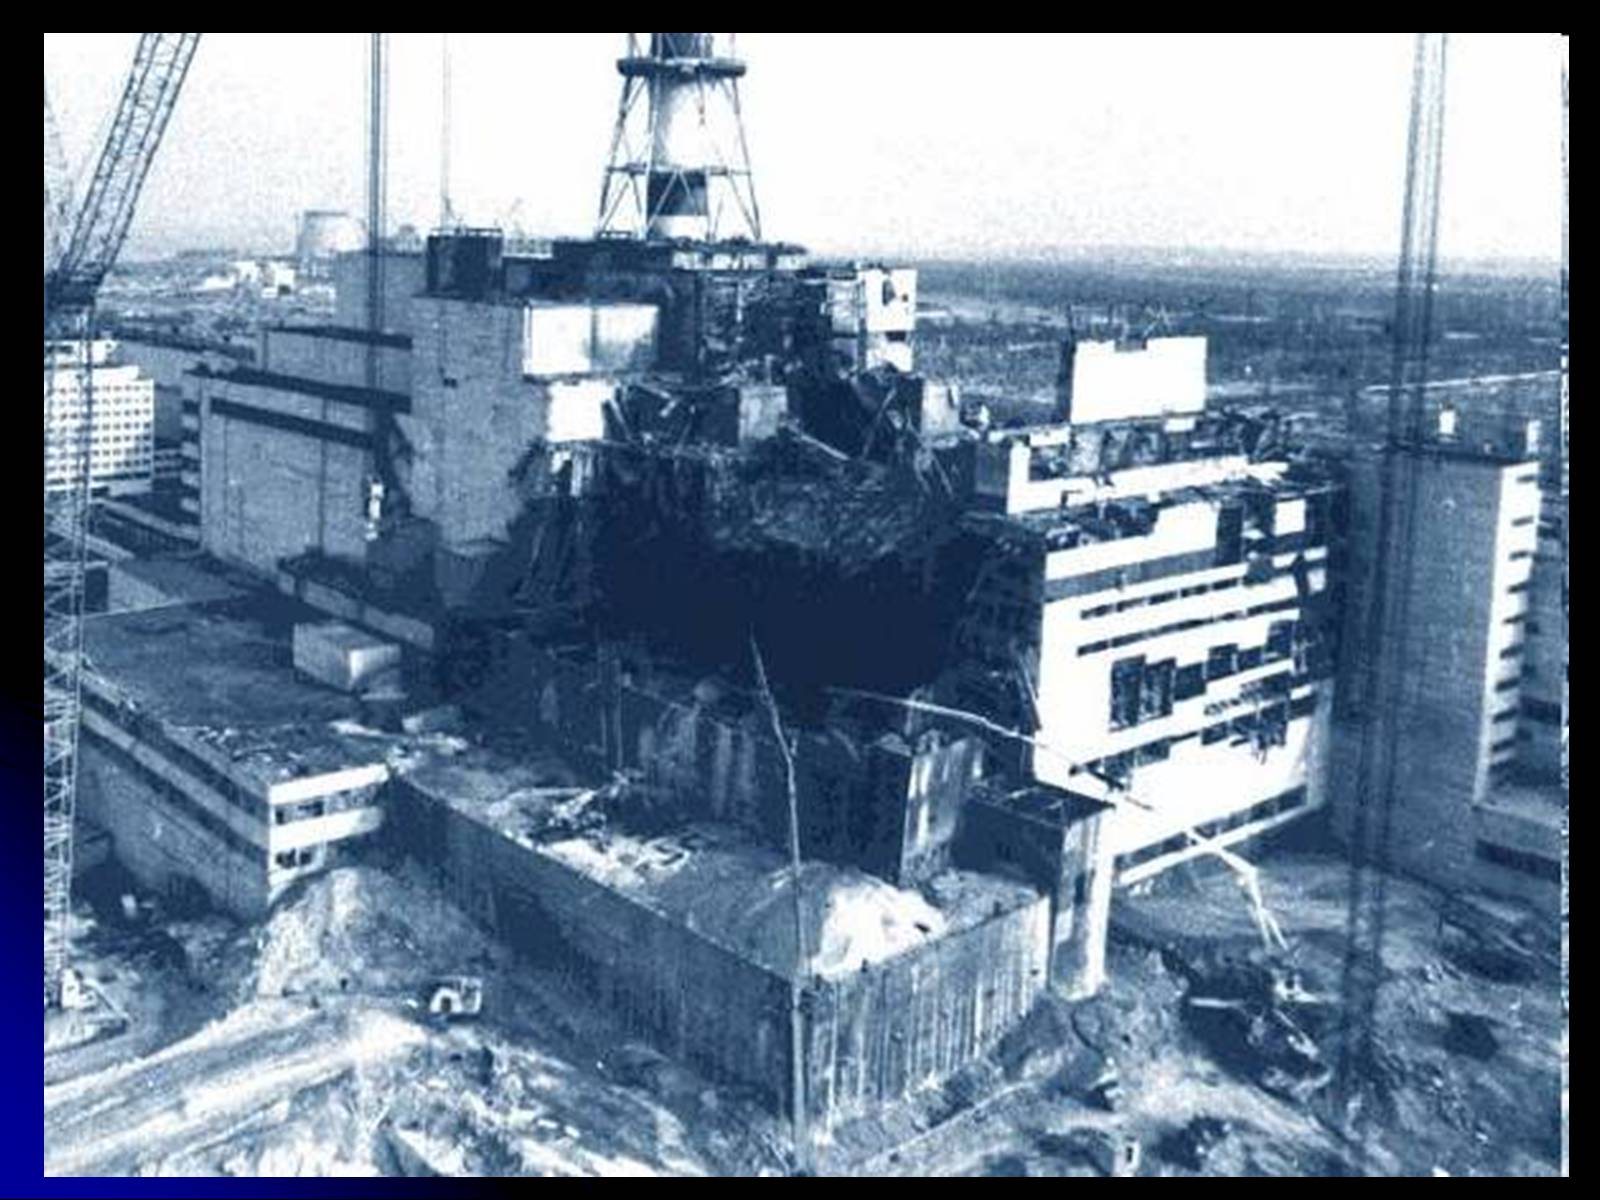 10 аварий на аэс. Чернобыльская АЭС 1986. Чернобыльская АЭС 1986 реактор. 4 Энергоблок Чернобыльской АЭС 1986. Чернобыль 26.04.1986 взрыв.